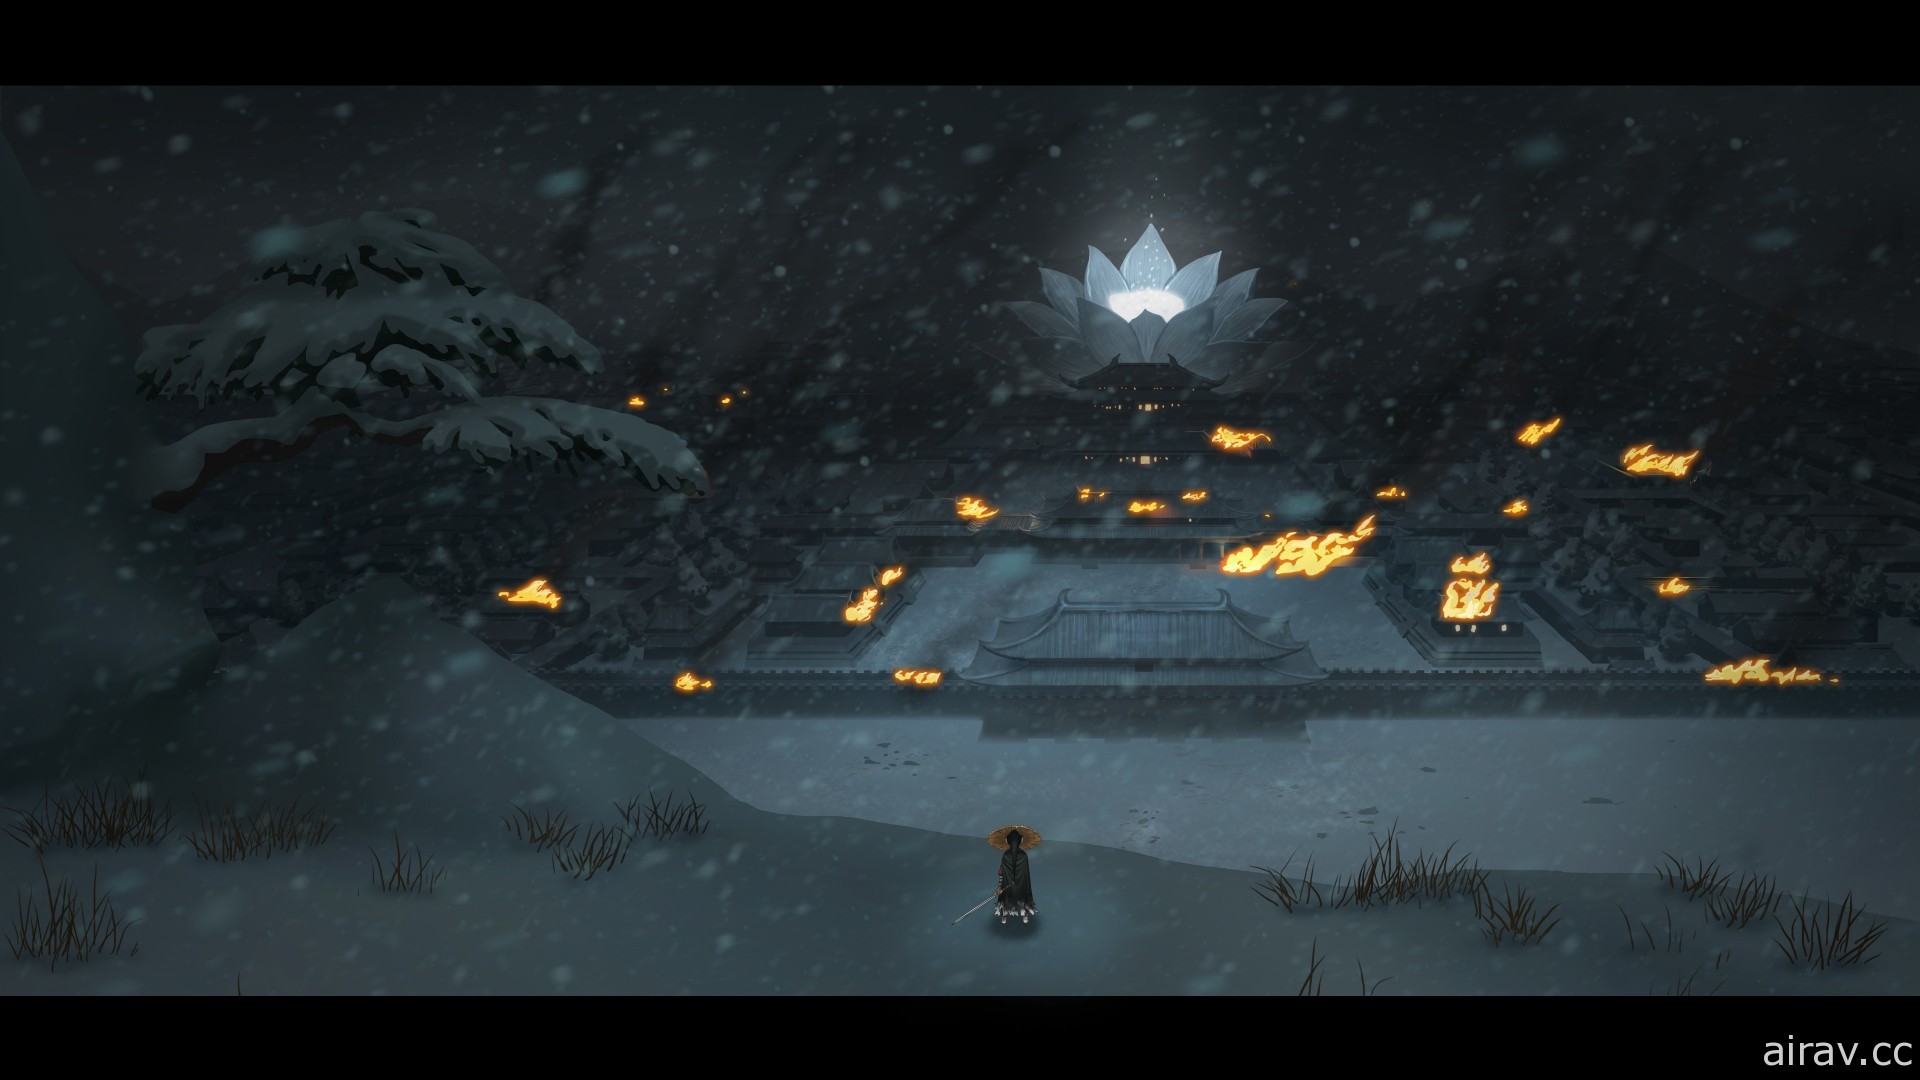 Roguelike 動作遊戲《暖雪》近日公開 釋出故事宣傳影片